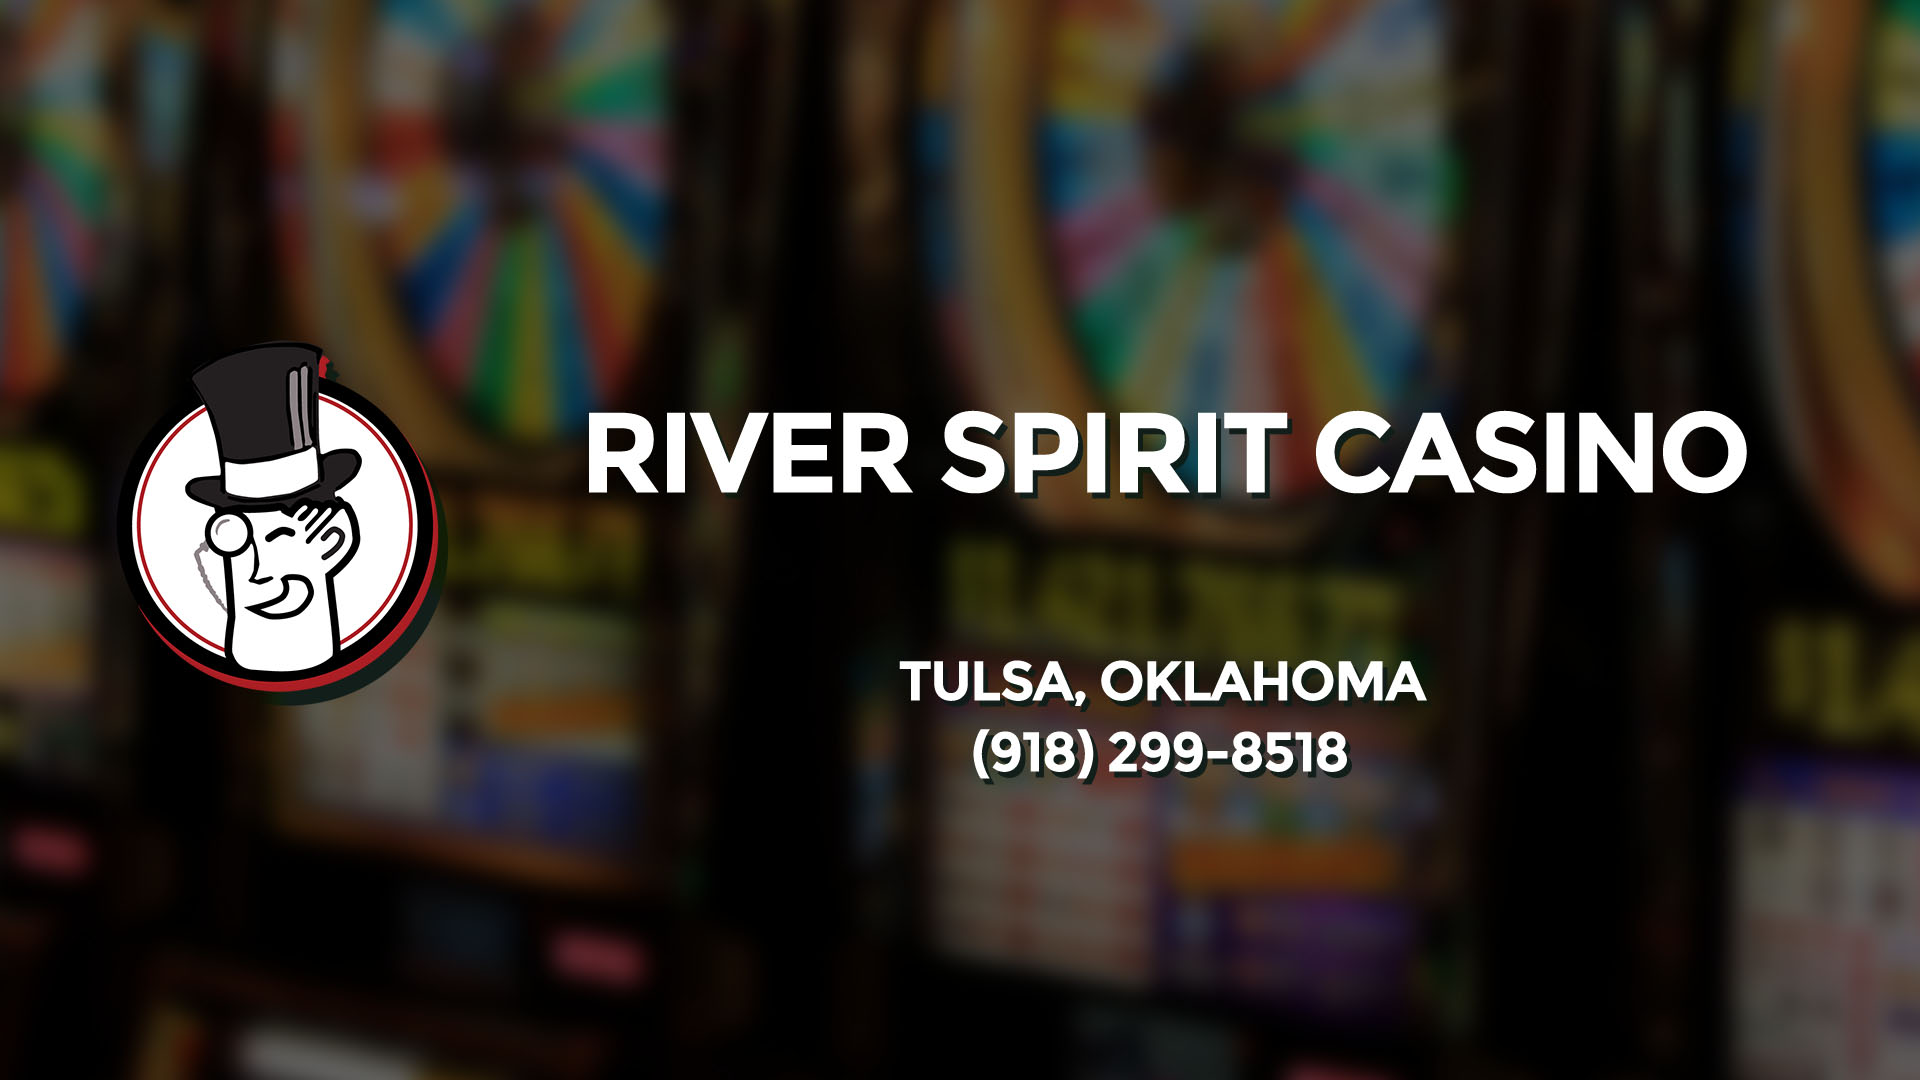 river spirit casino events calendar